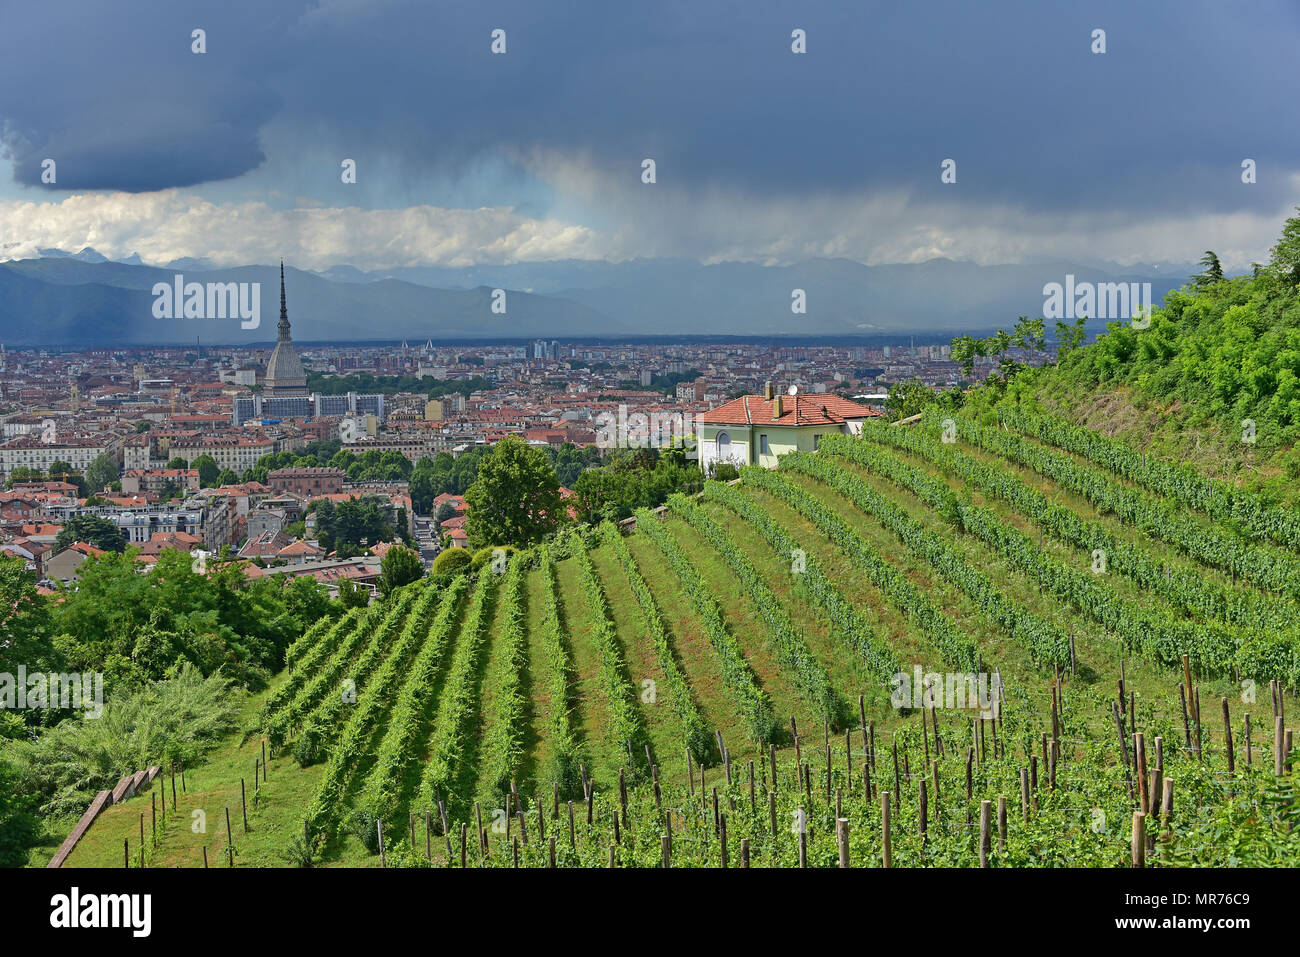 Villa della Regina, vue sur le vignoble royal de Turin, la ville de Molo, alpes et pluie dans la distance, Turin, Italie Banque D'Images